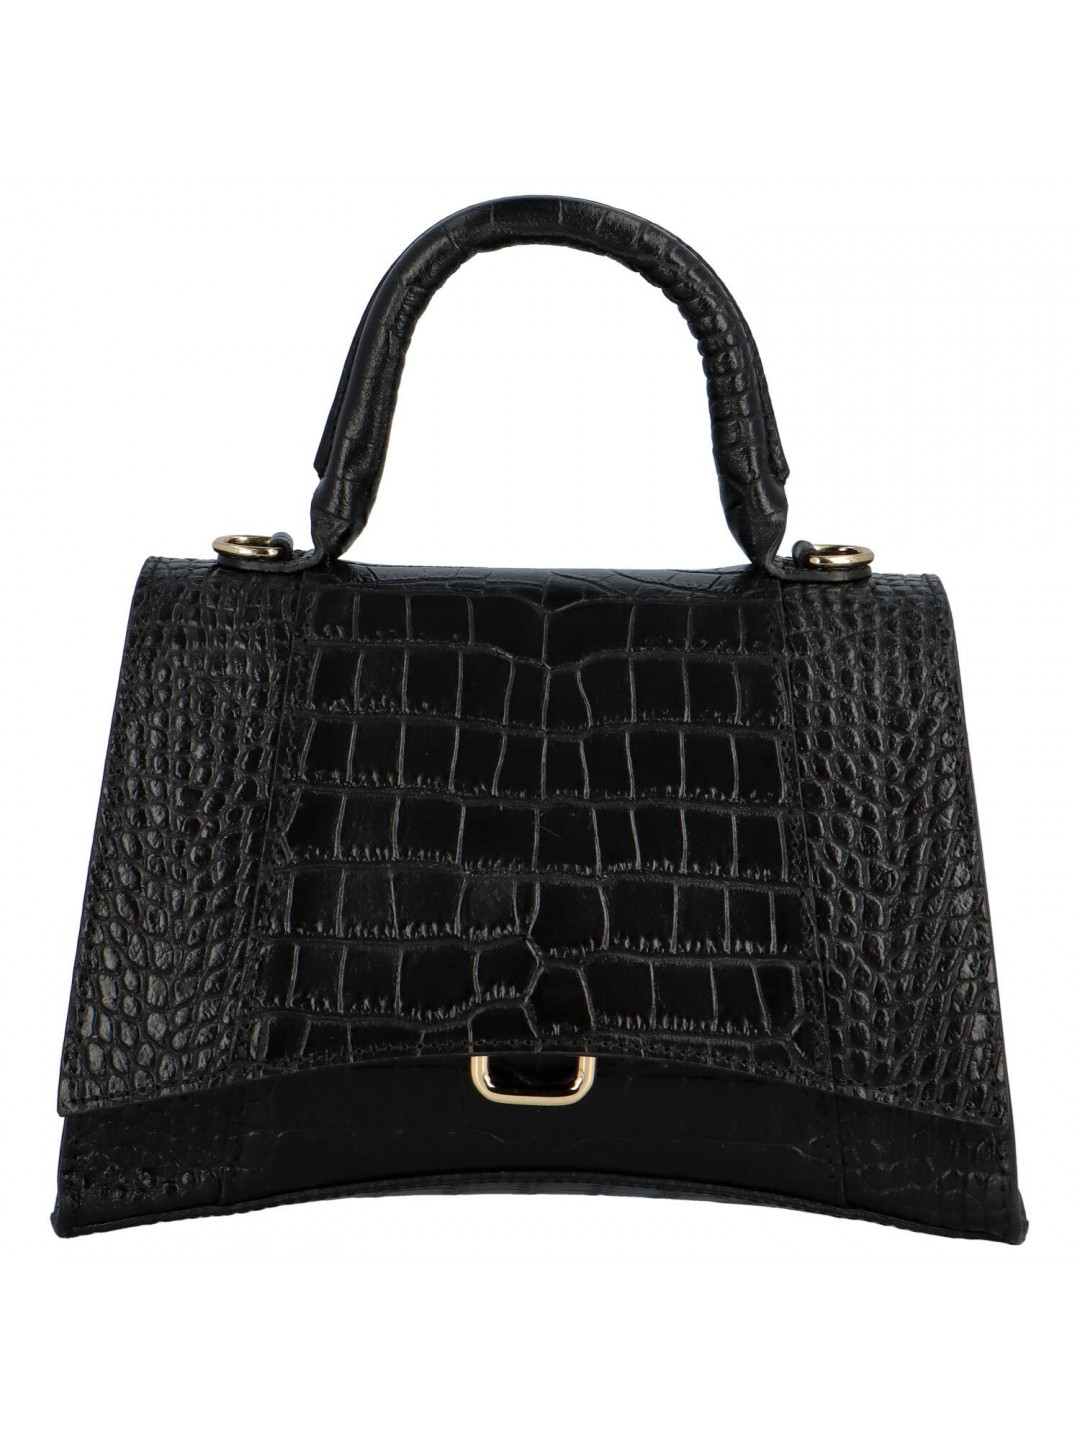 Luxusní dámská kožená kabelka Carla černá